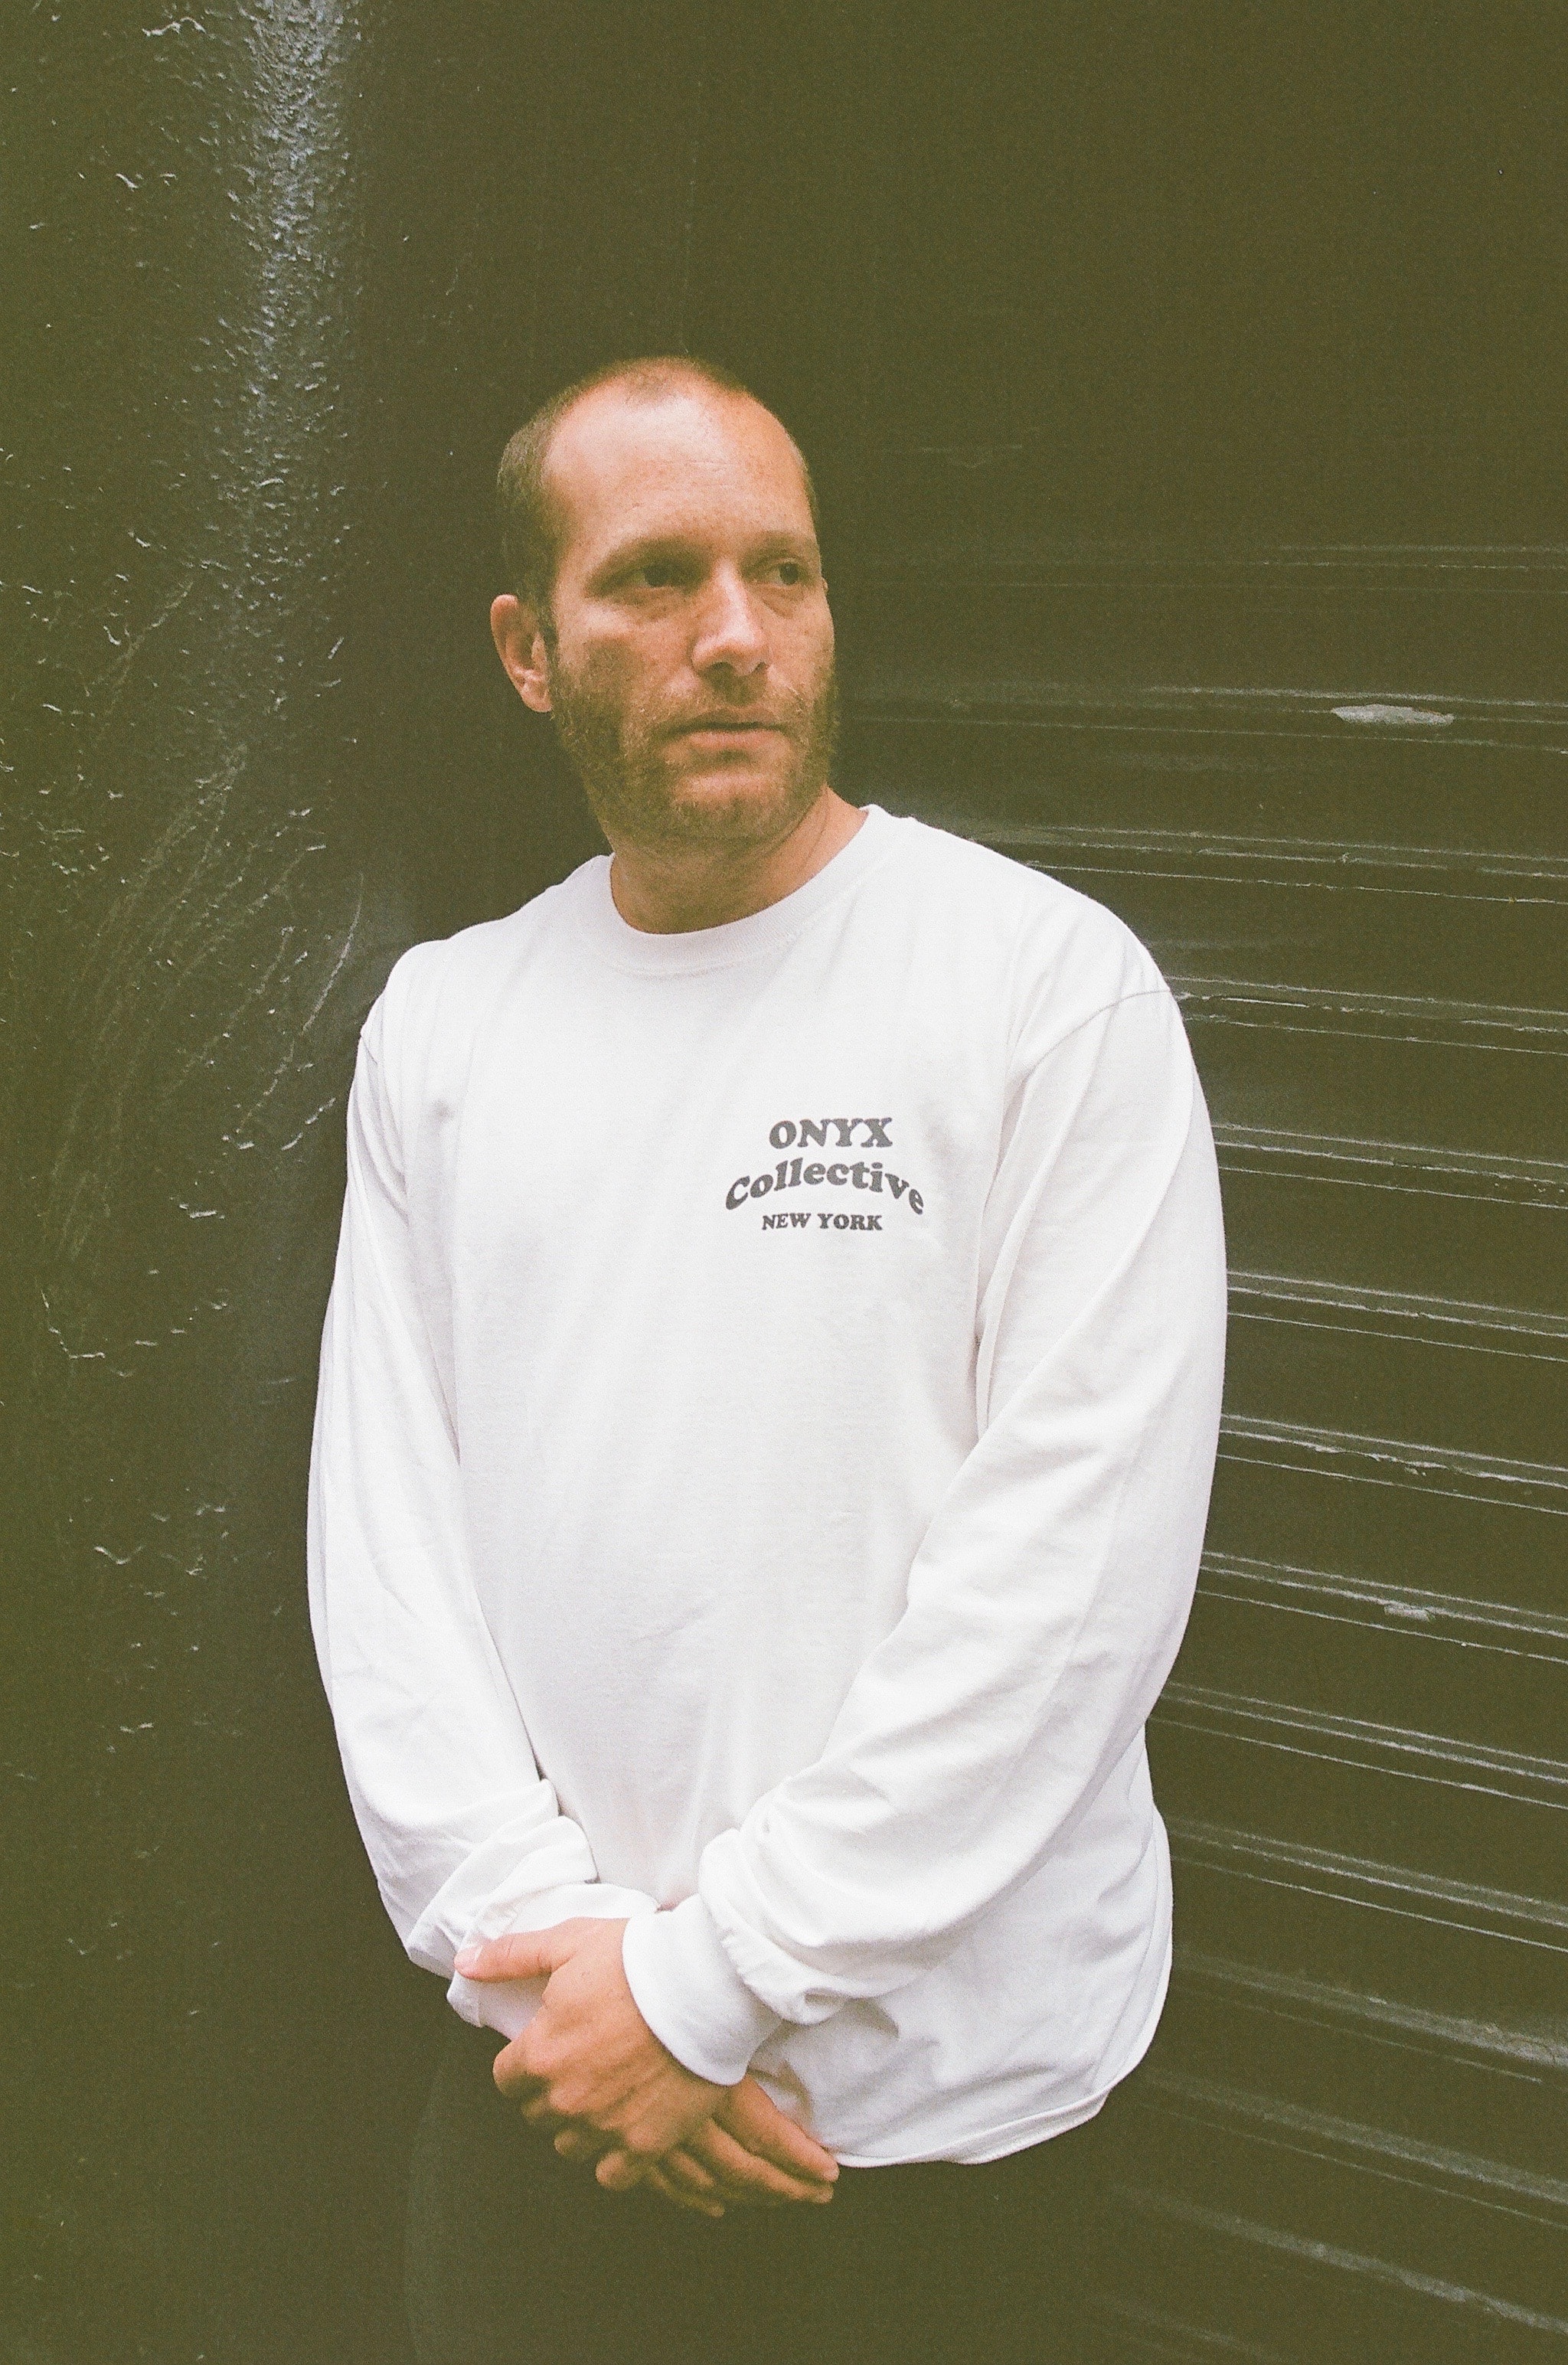 NYのクリエイター集団 Onyx Collective によるTシャツカプセルコレクション